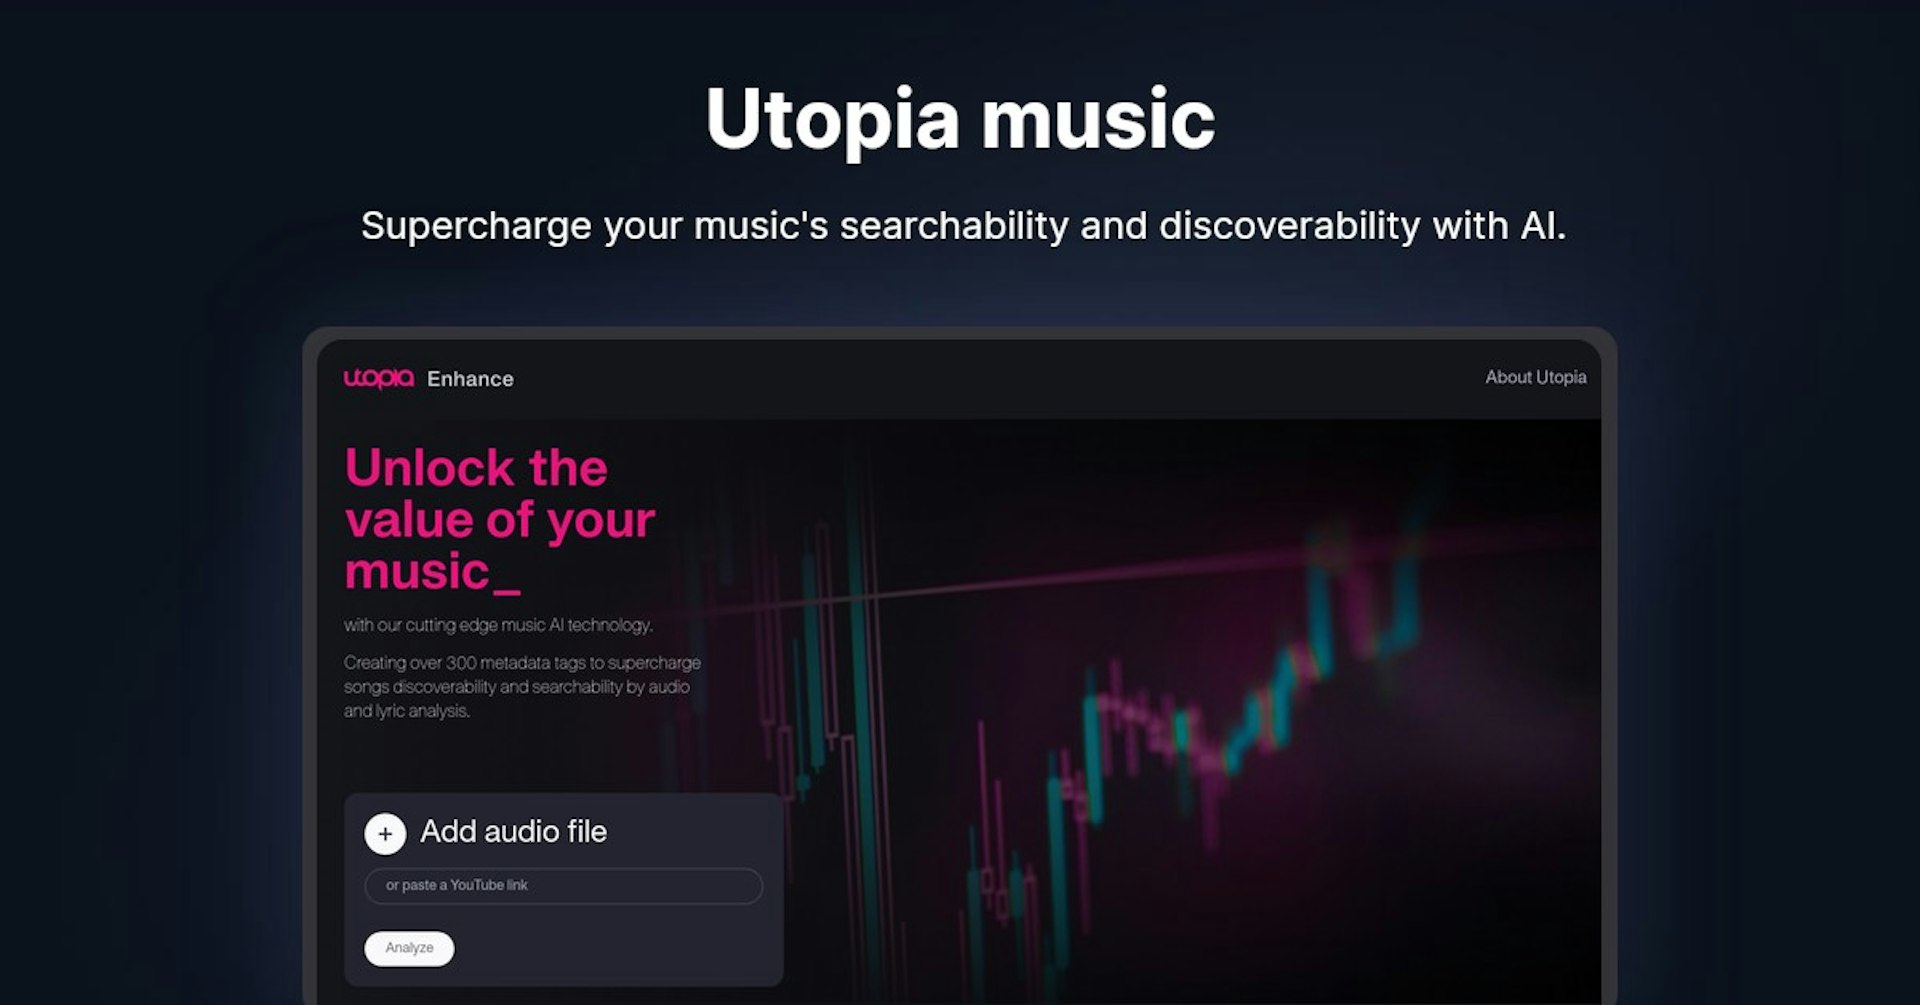 Utopia music